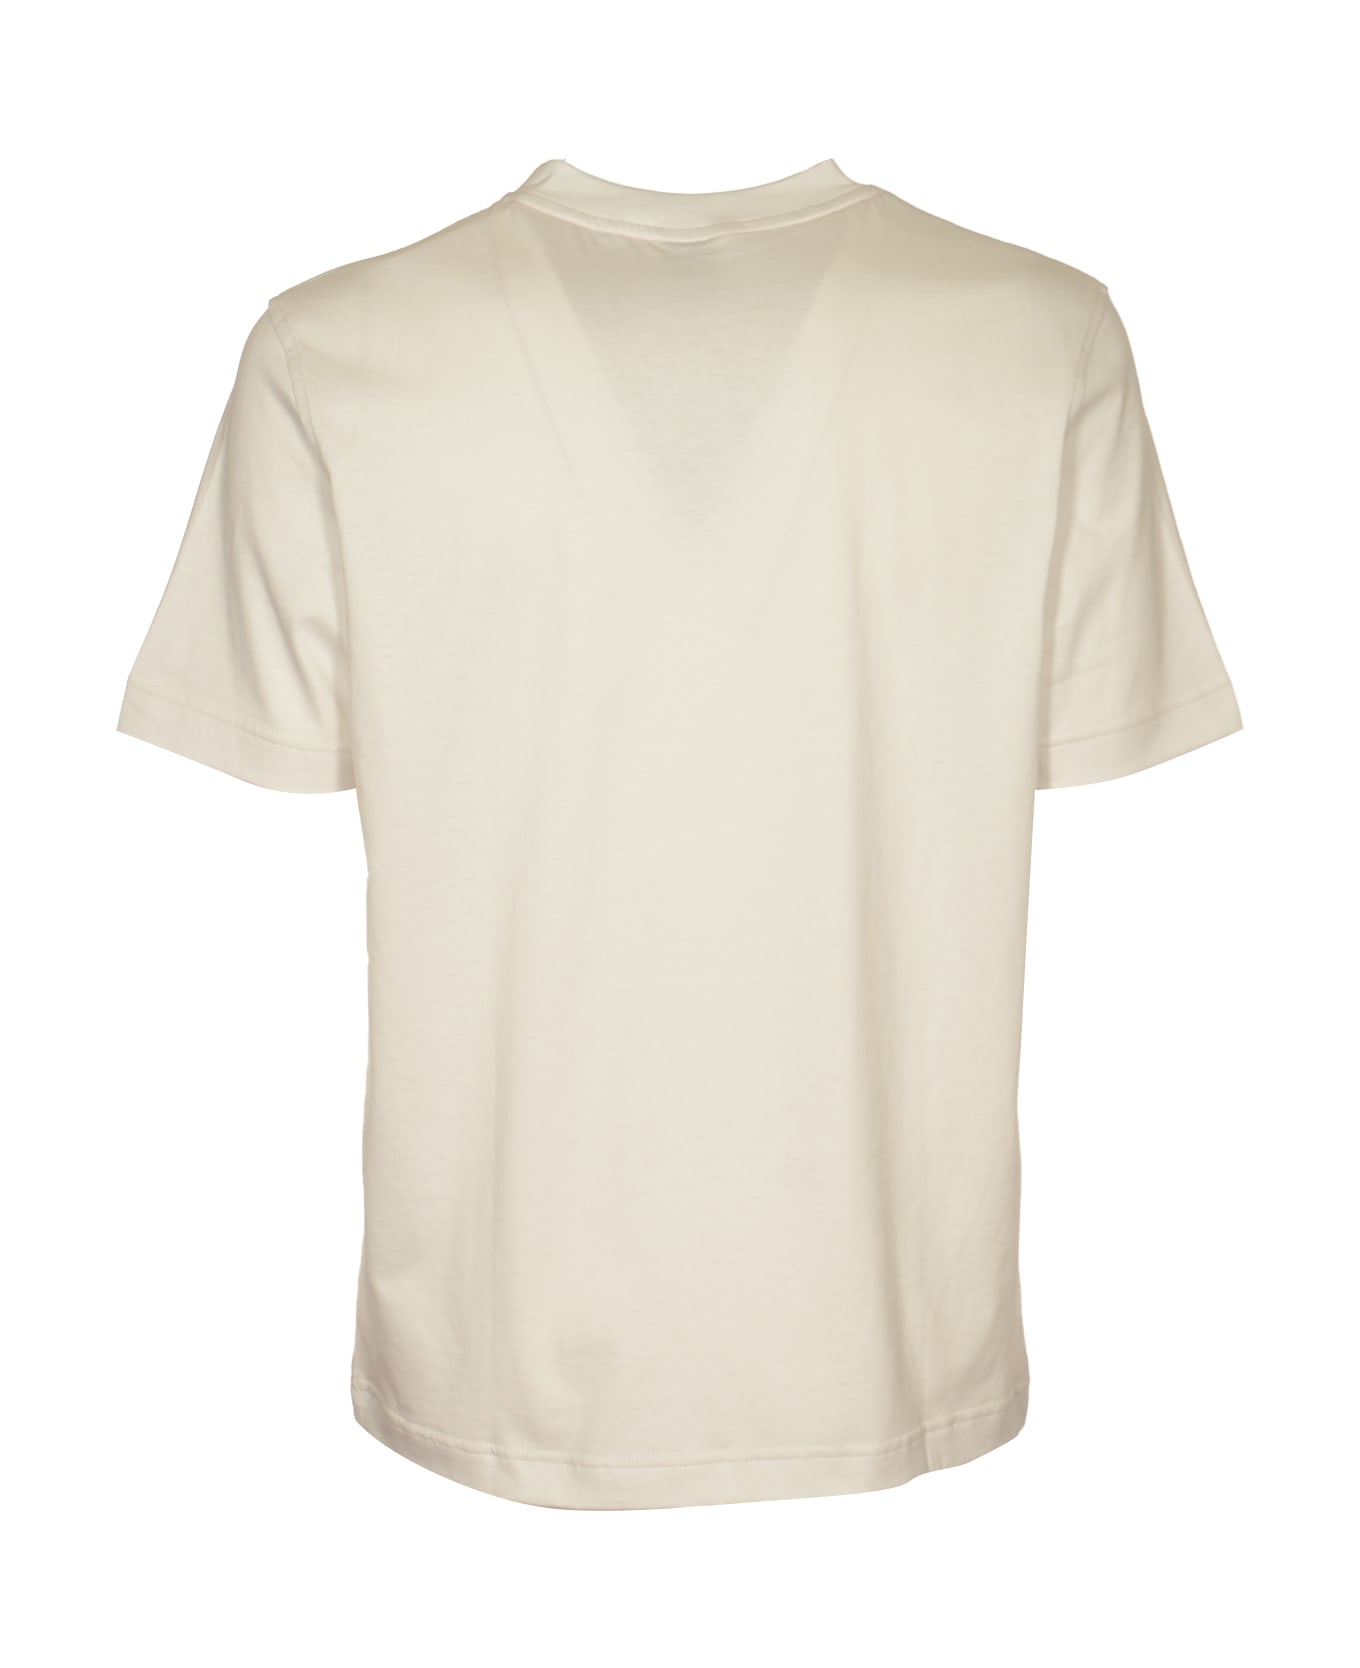 Hugo Boss Round Neck Classic T-shirt - Beige